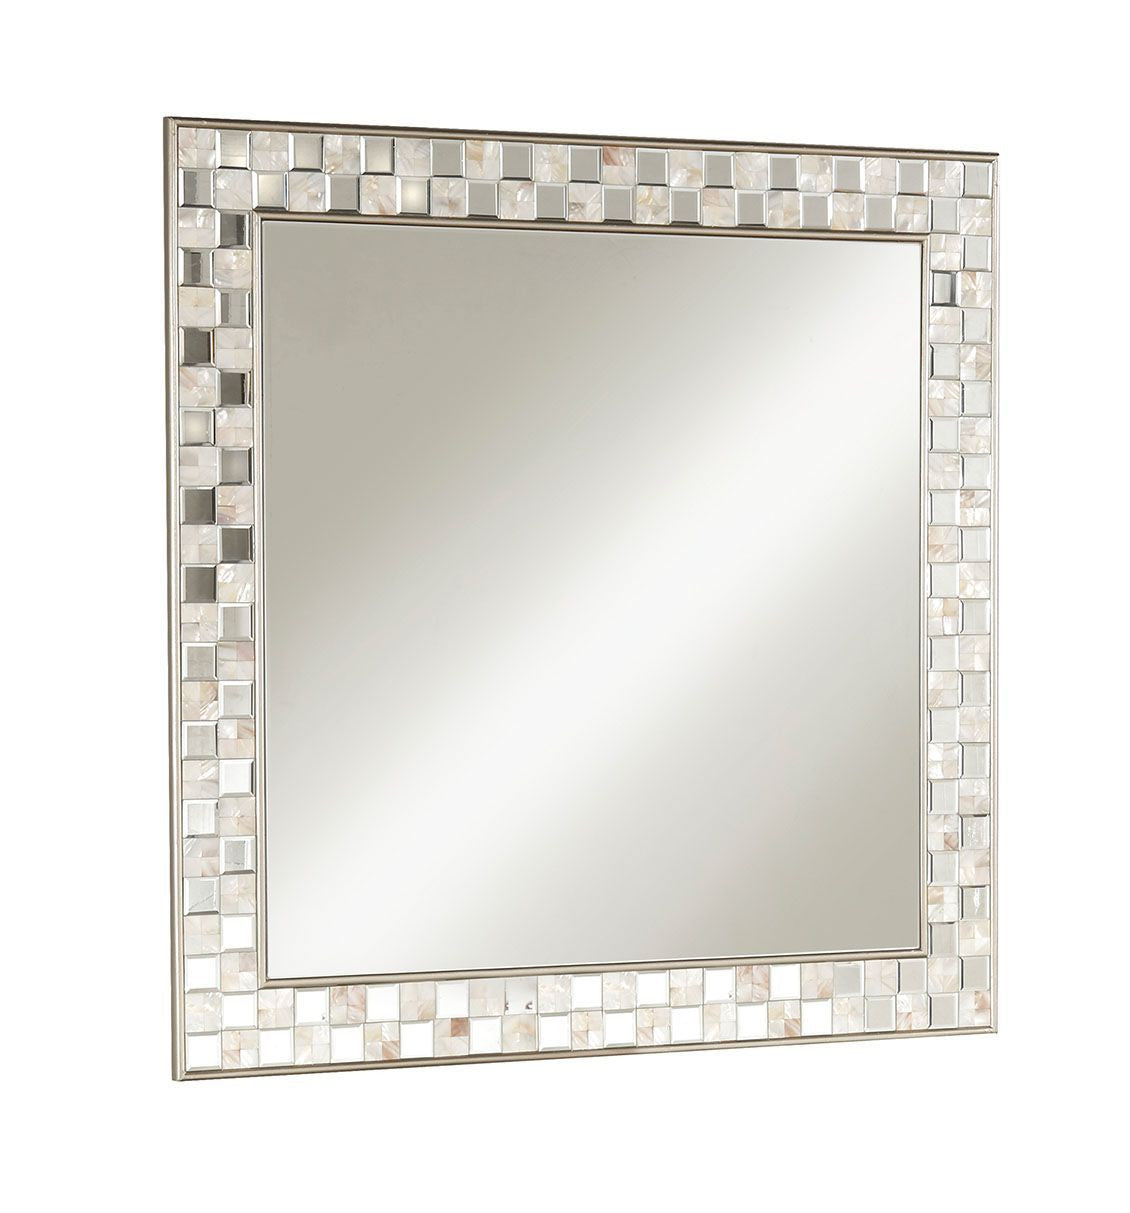 39" Square Accent Mirror